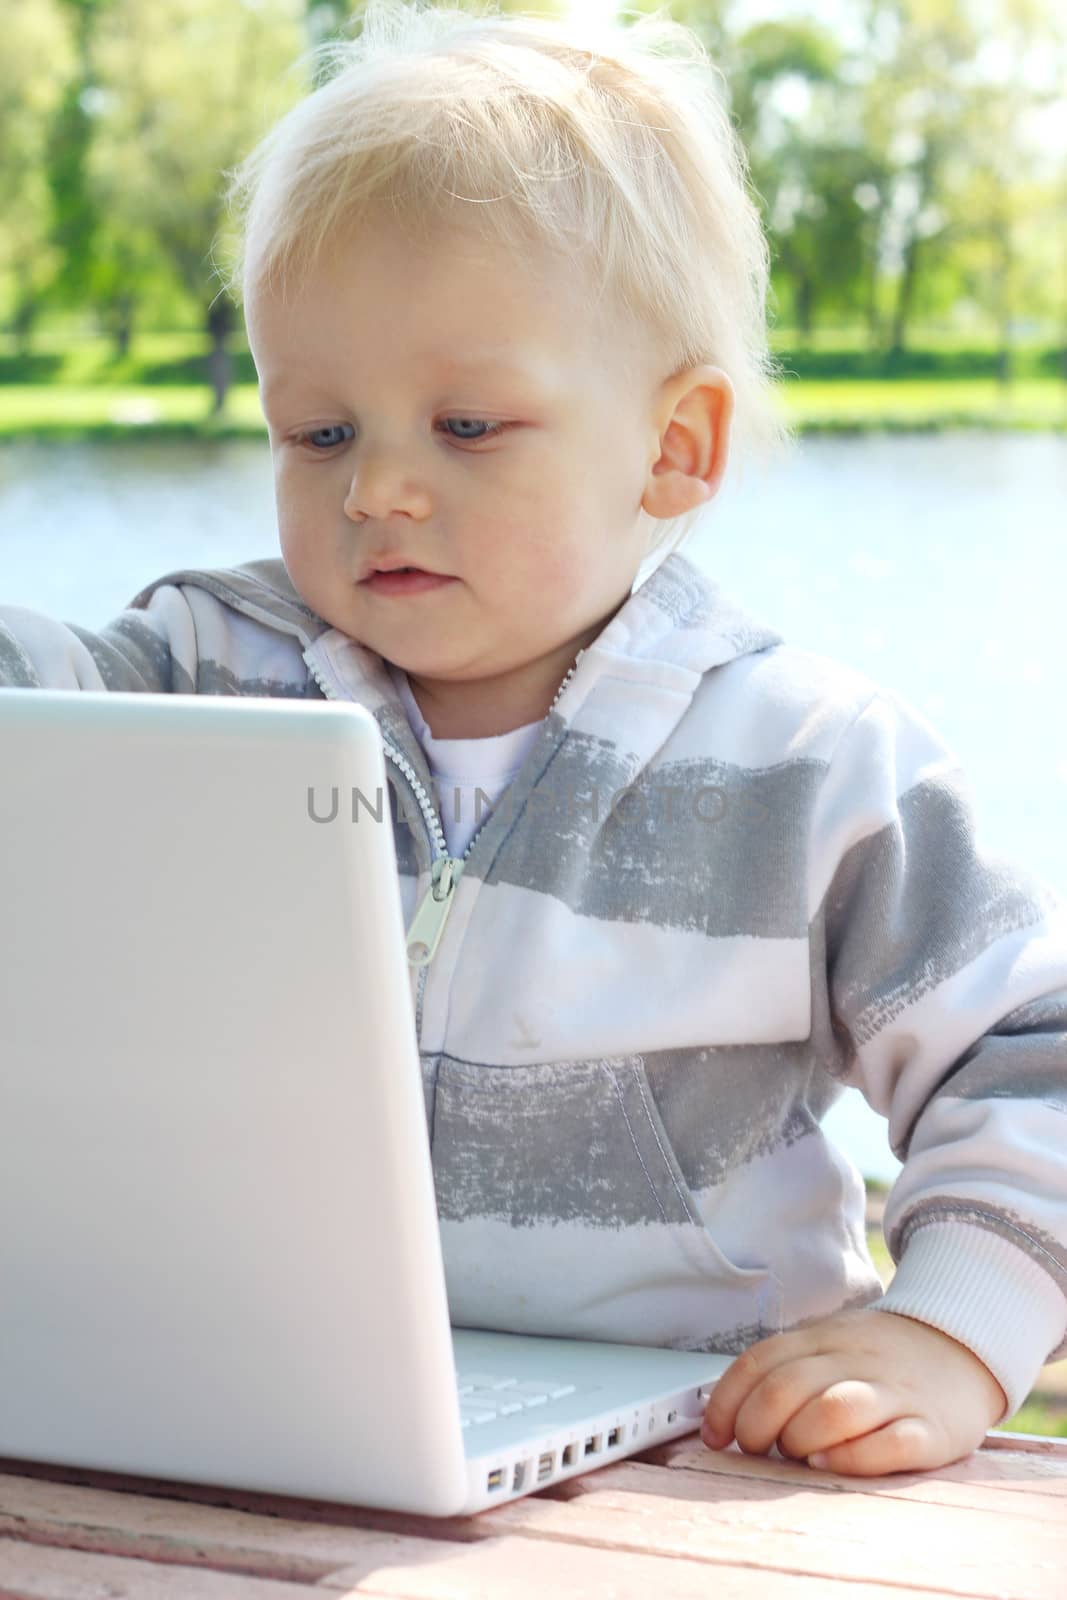 Child with laptop by destillat